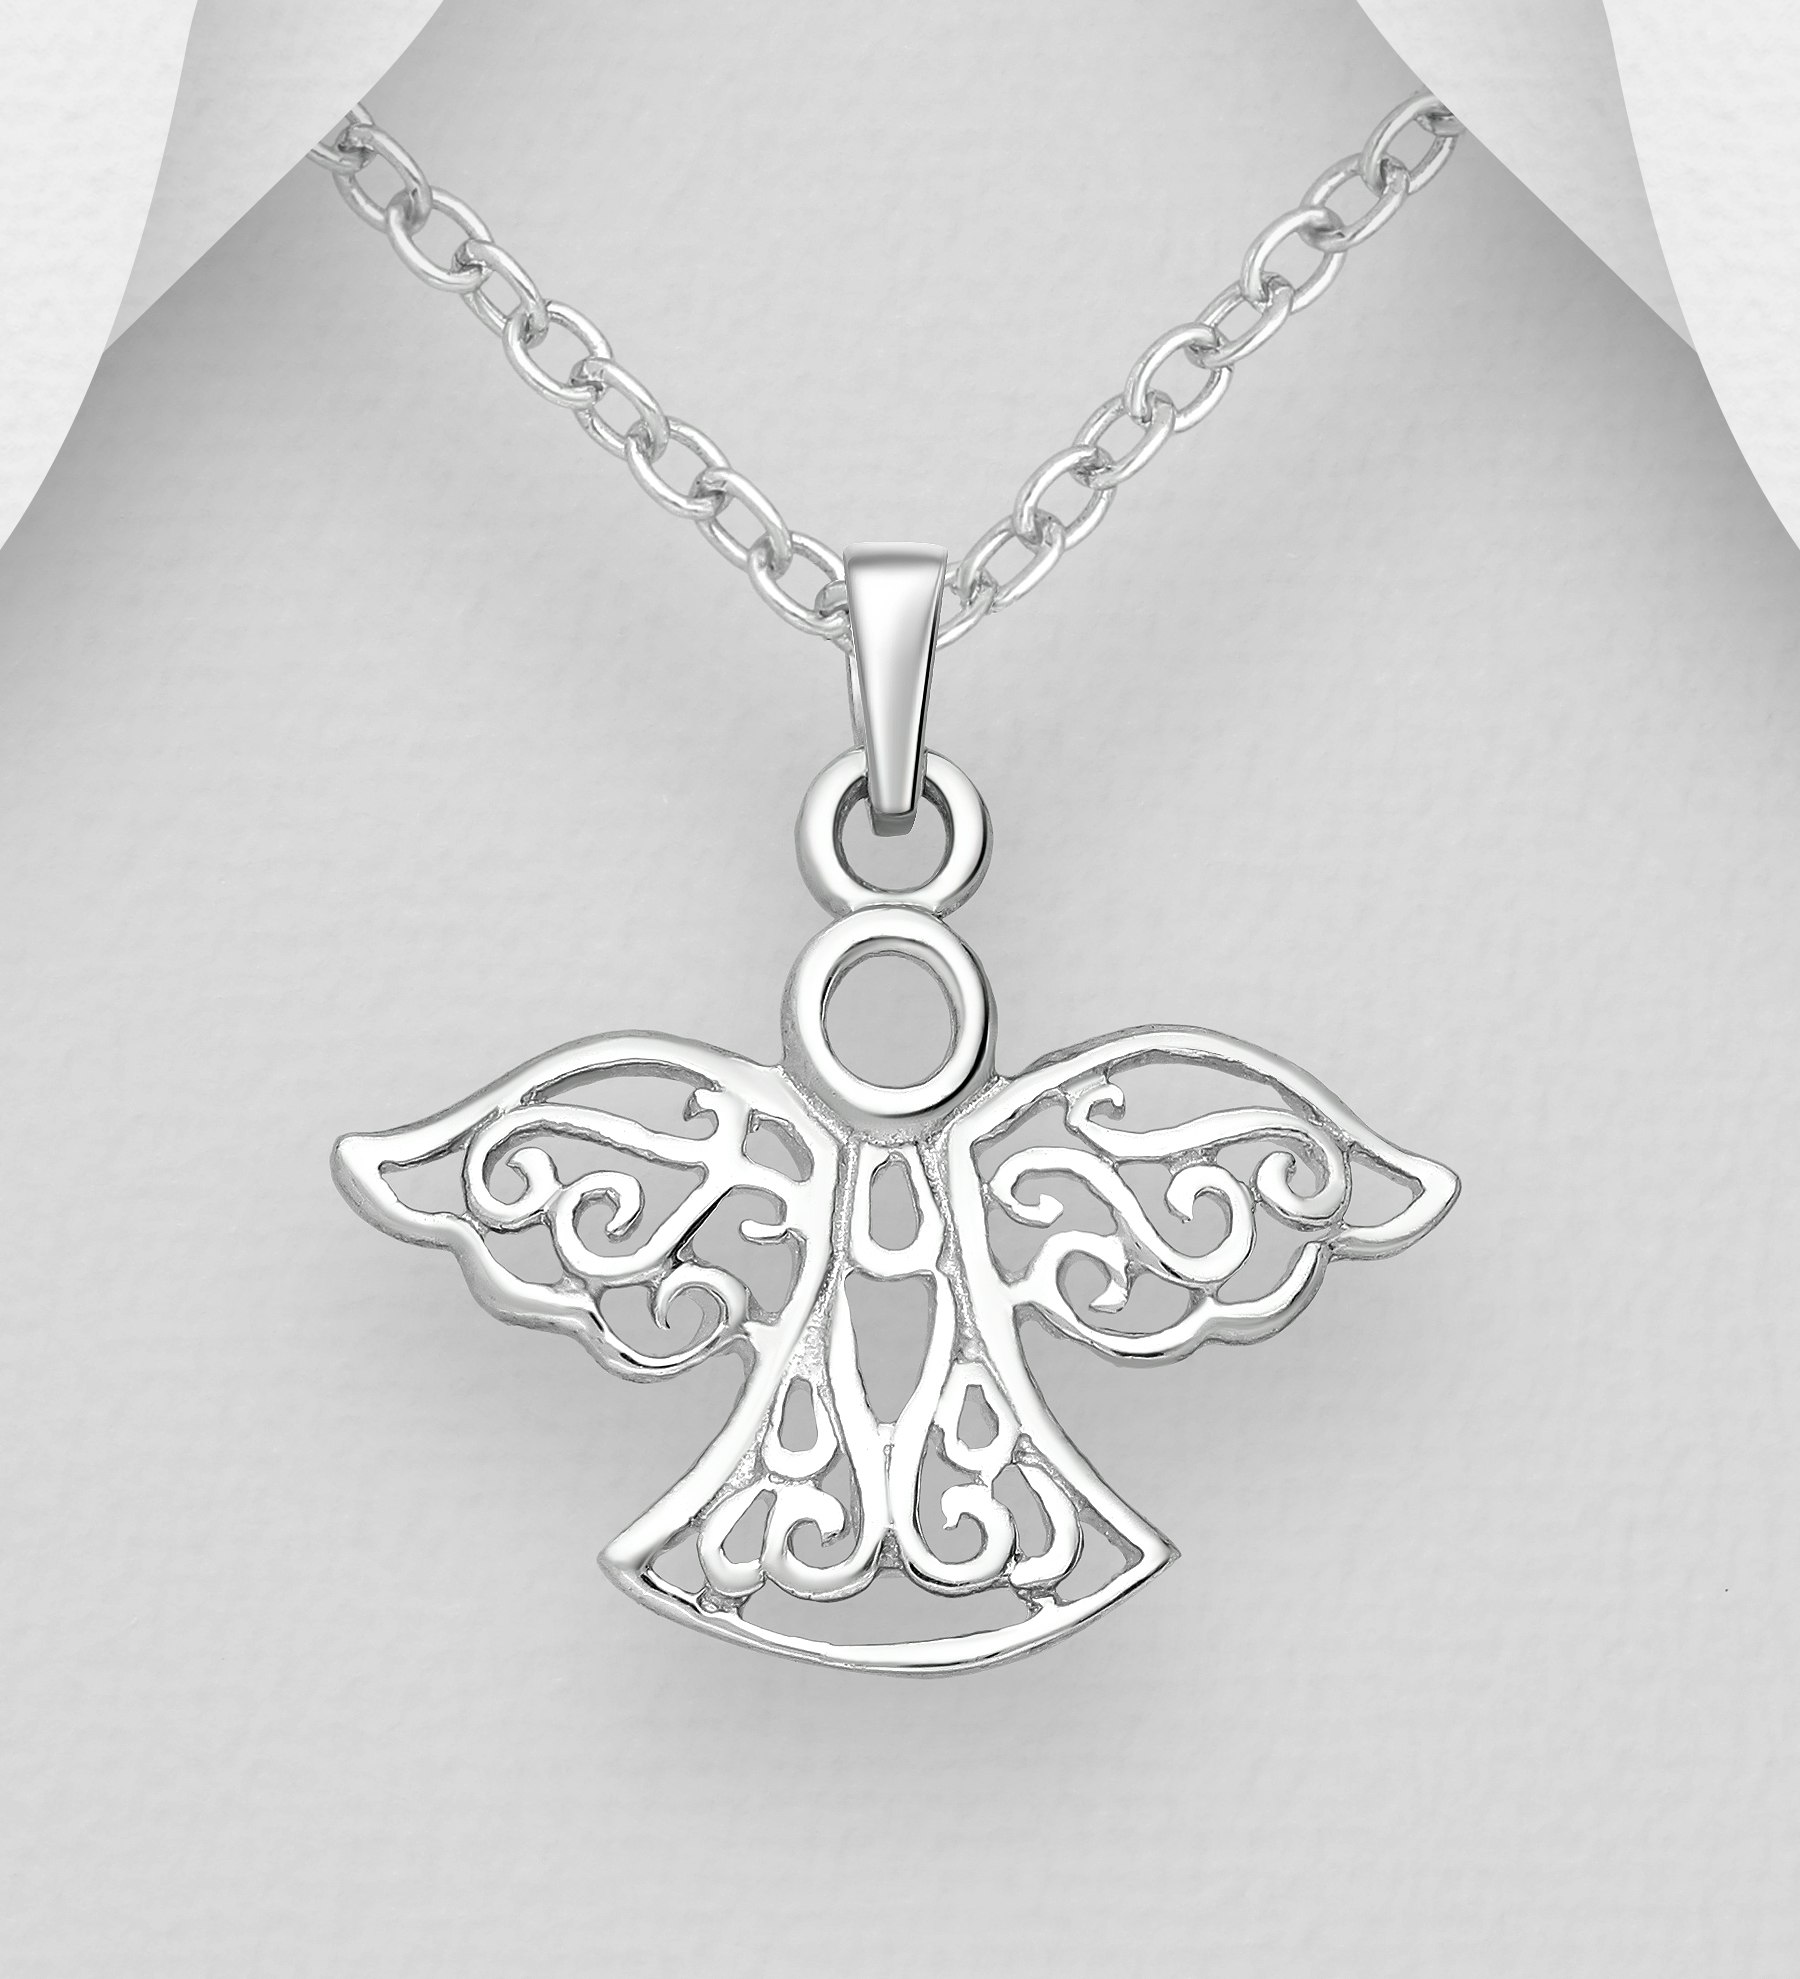 Halsband Ängel - smycke med en skyddsängel i silver med fint mönster